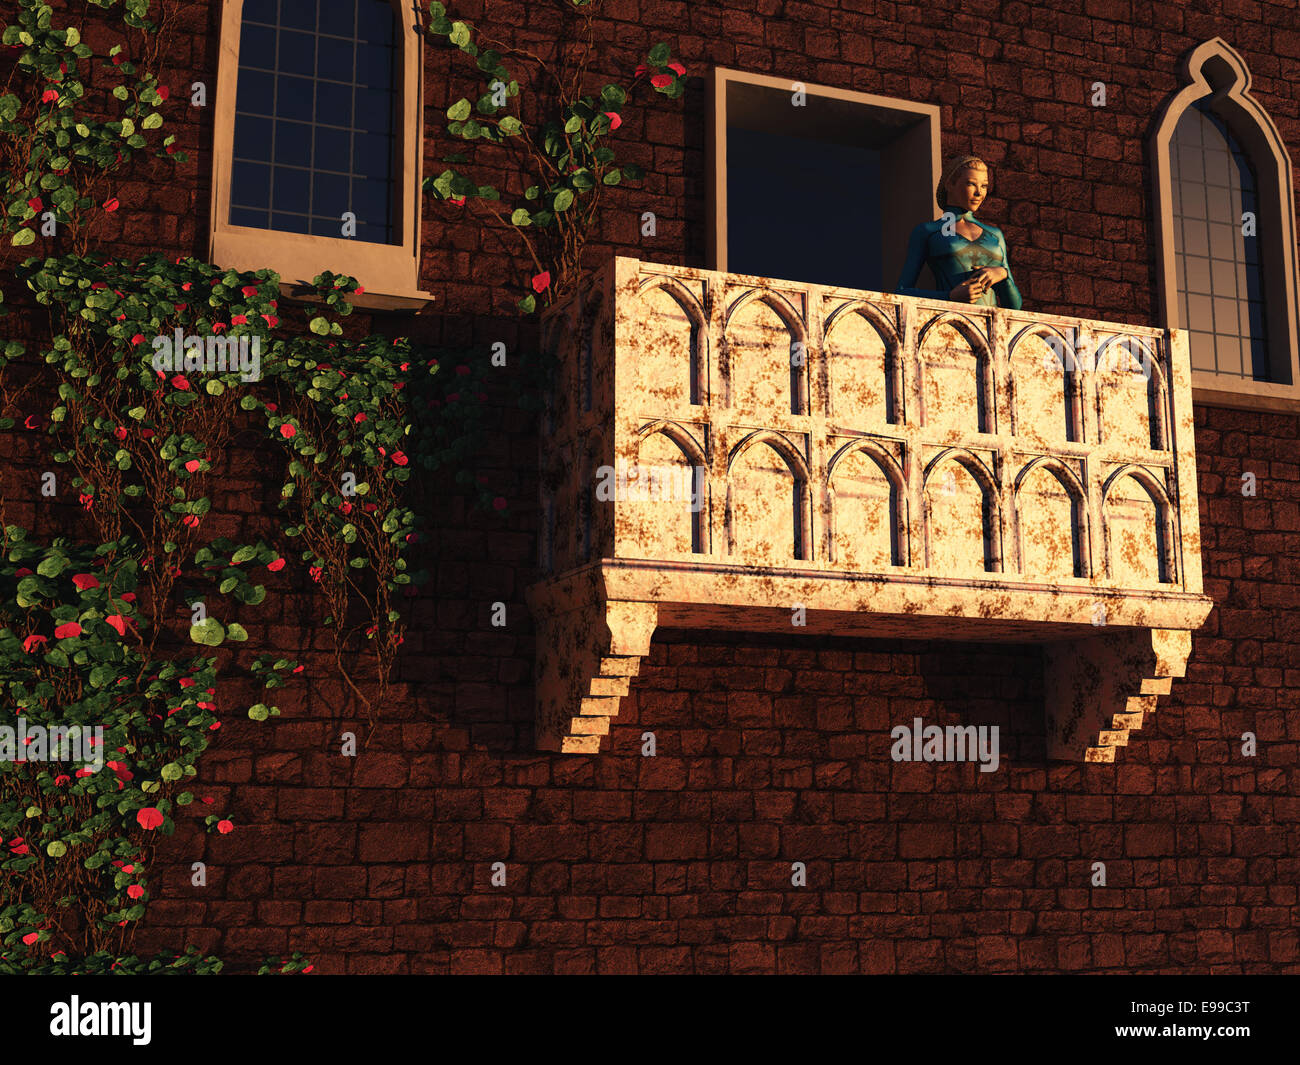 Basada en la obra de William Shakespeare y el edificio real en Verona, Juliet está mirando desde su balcón Foto de stock